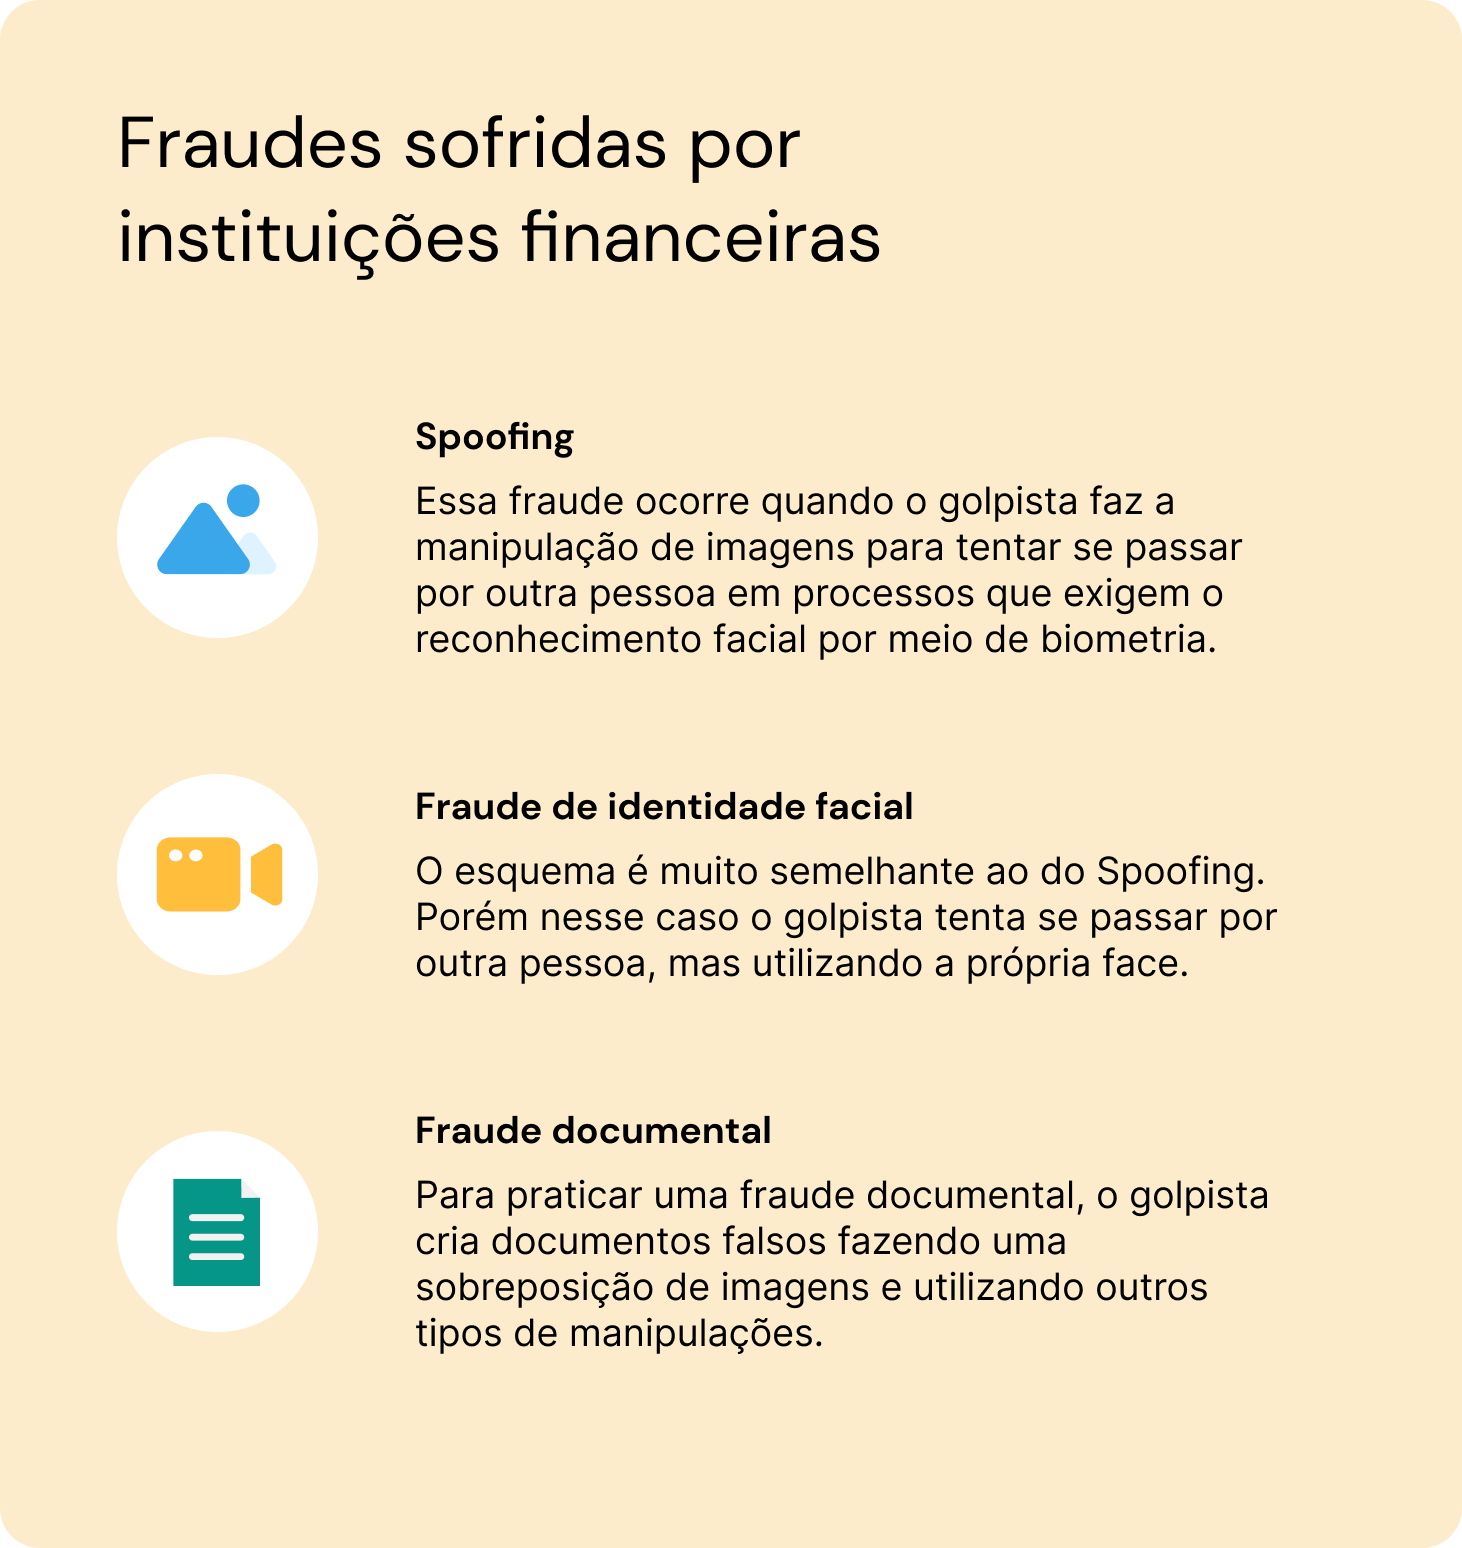 Explicação de 3 tipos de fraude sofridas por instituições financeiras (spoofing, fraude de identidade facial e fraude documental)